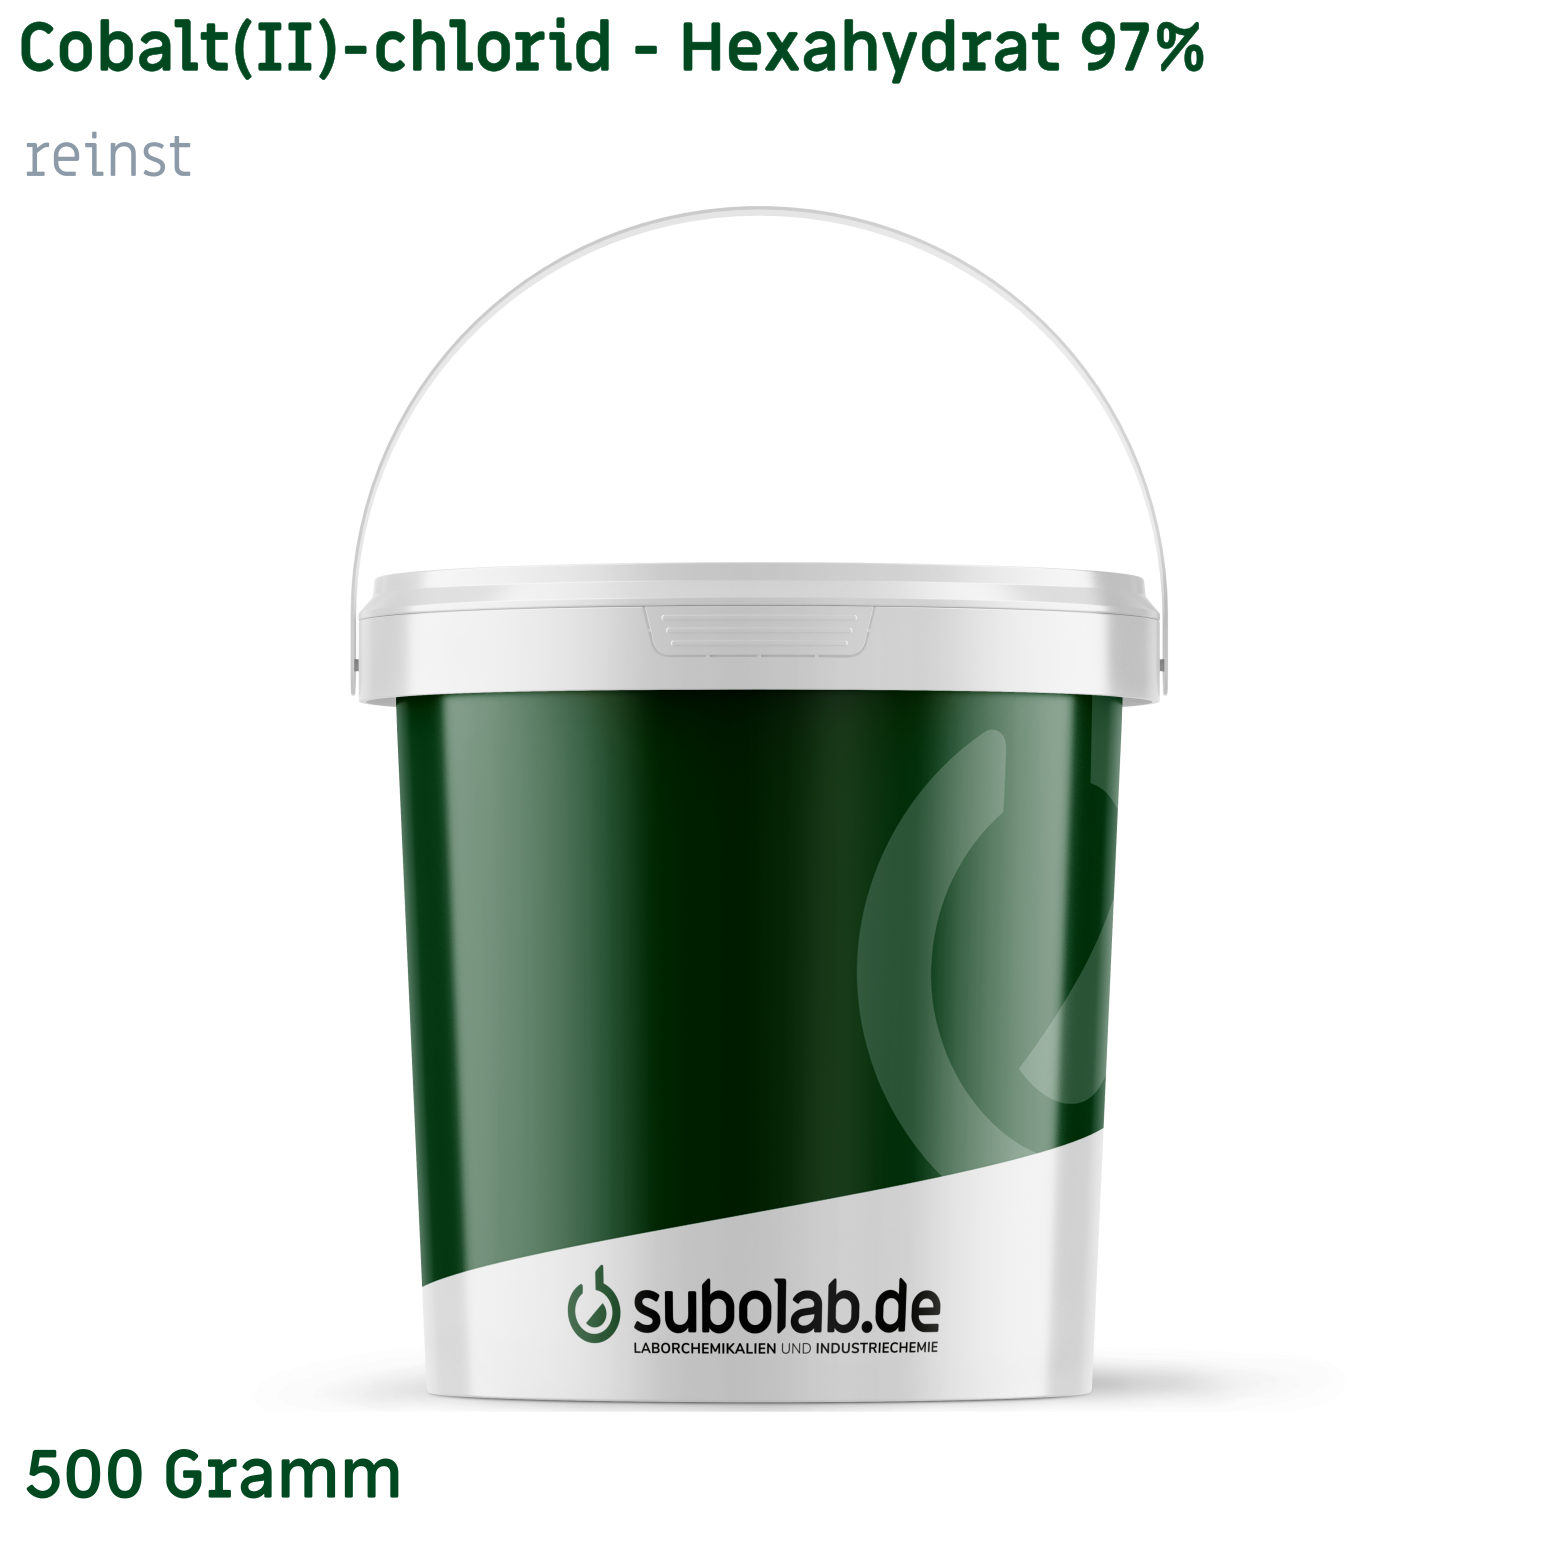 Bild von Cobalt(II)-chlorid - Hexahydrat 97% reinst (500 Gramm)